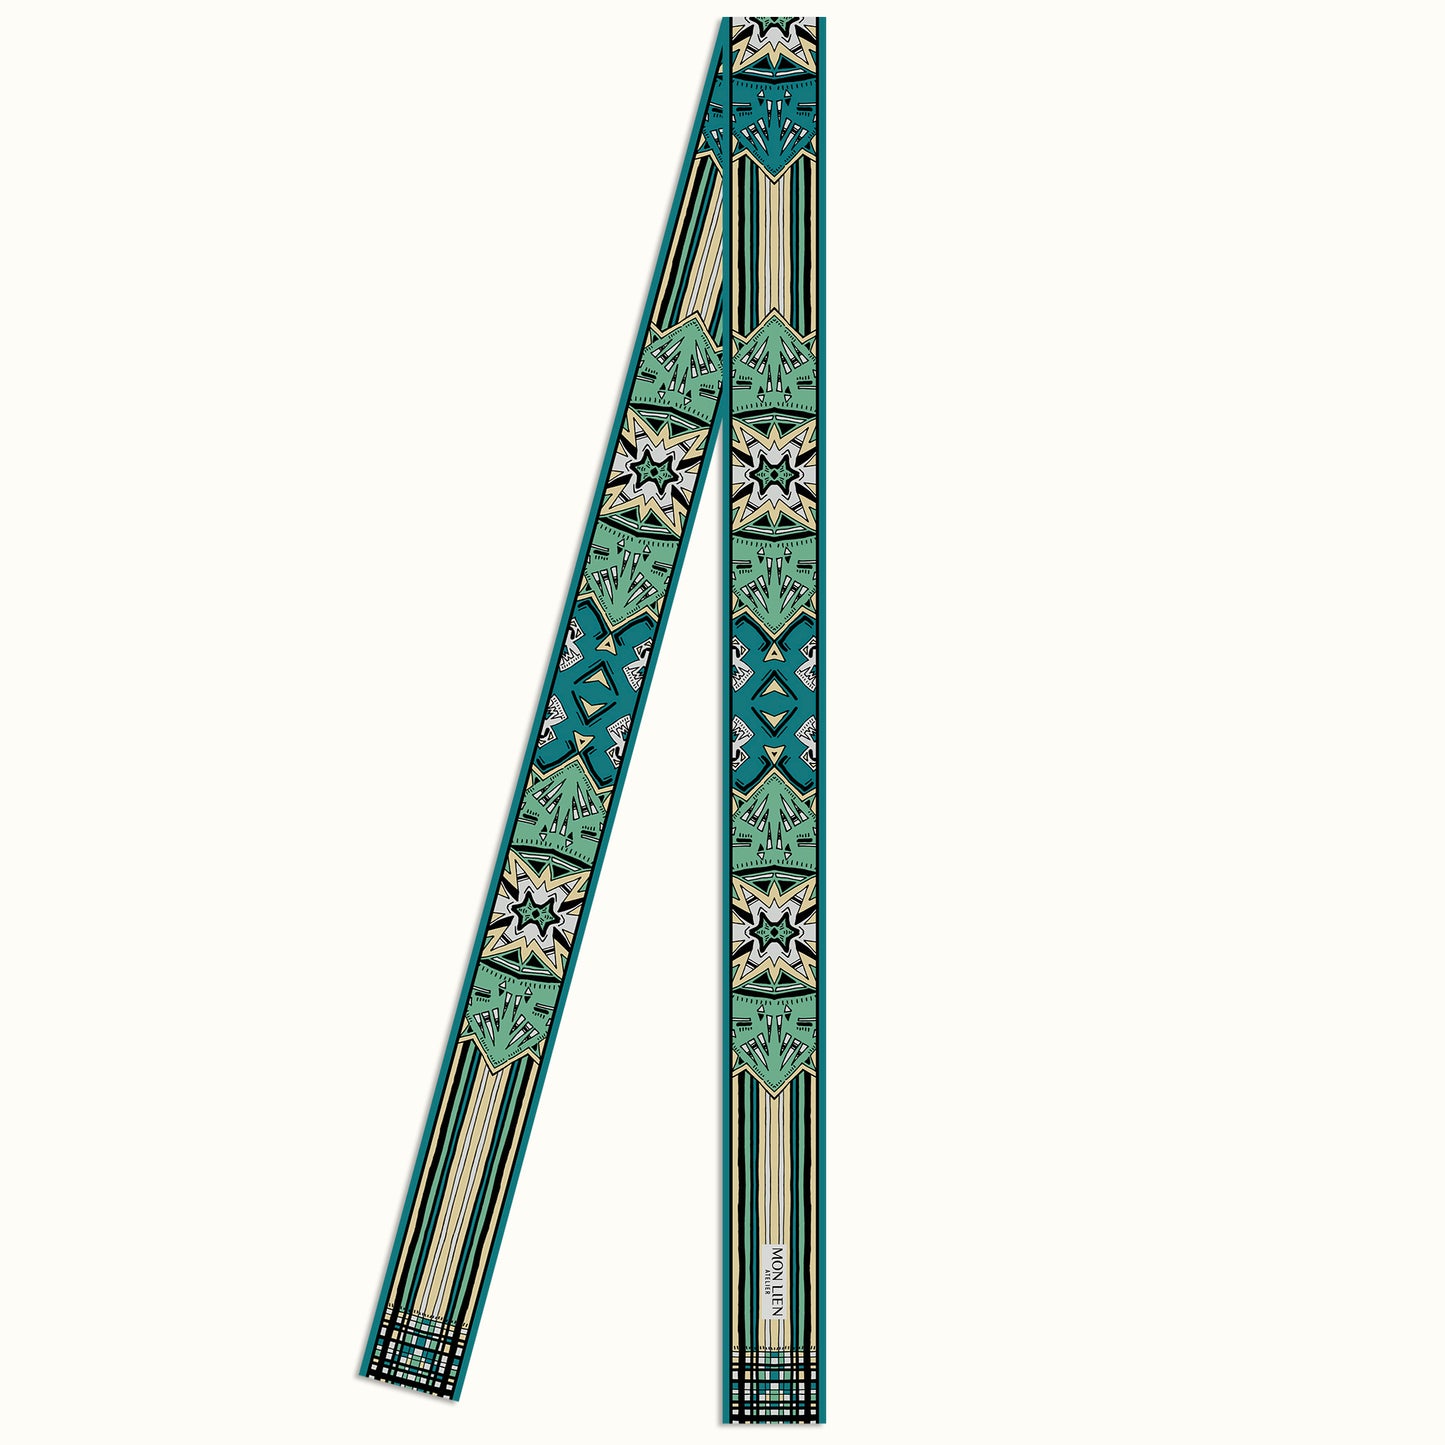 disegno della cintura in seta piegata con motivi nelle tonalità turchese e avorio da indossare in ogni occasione